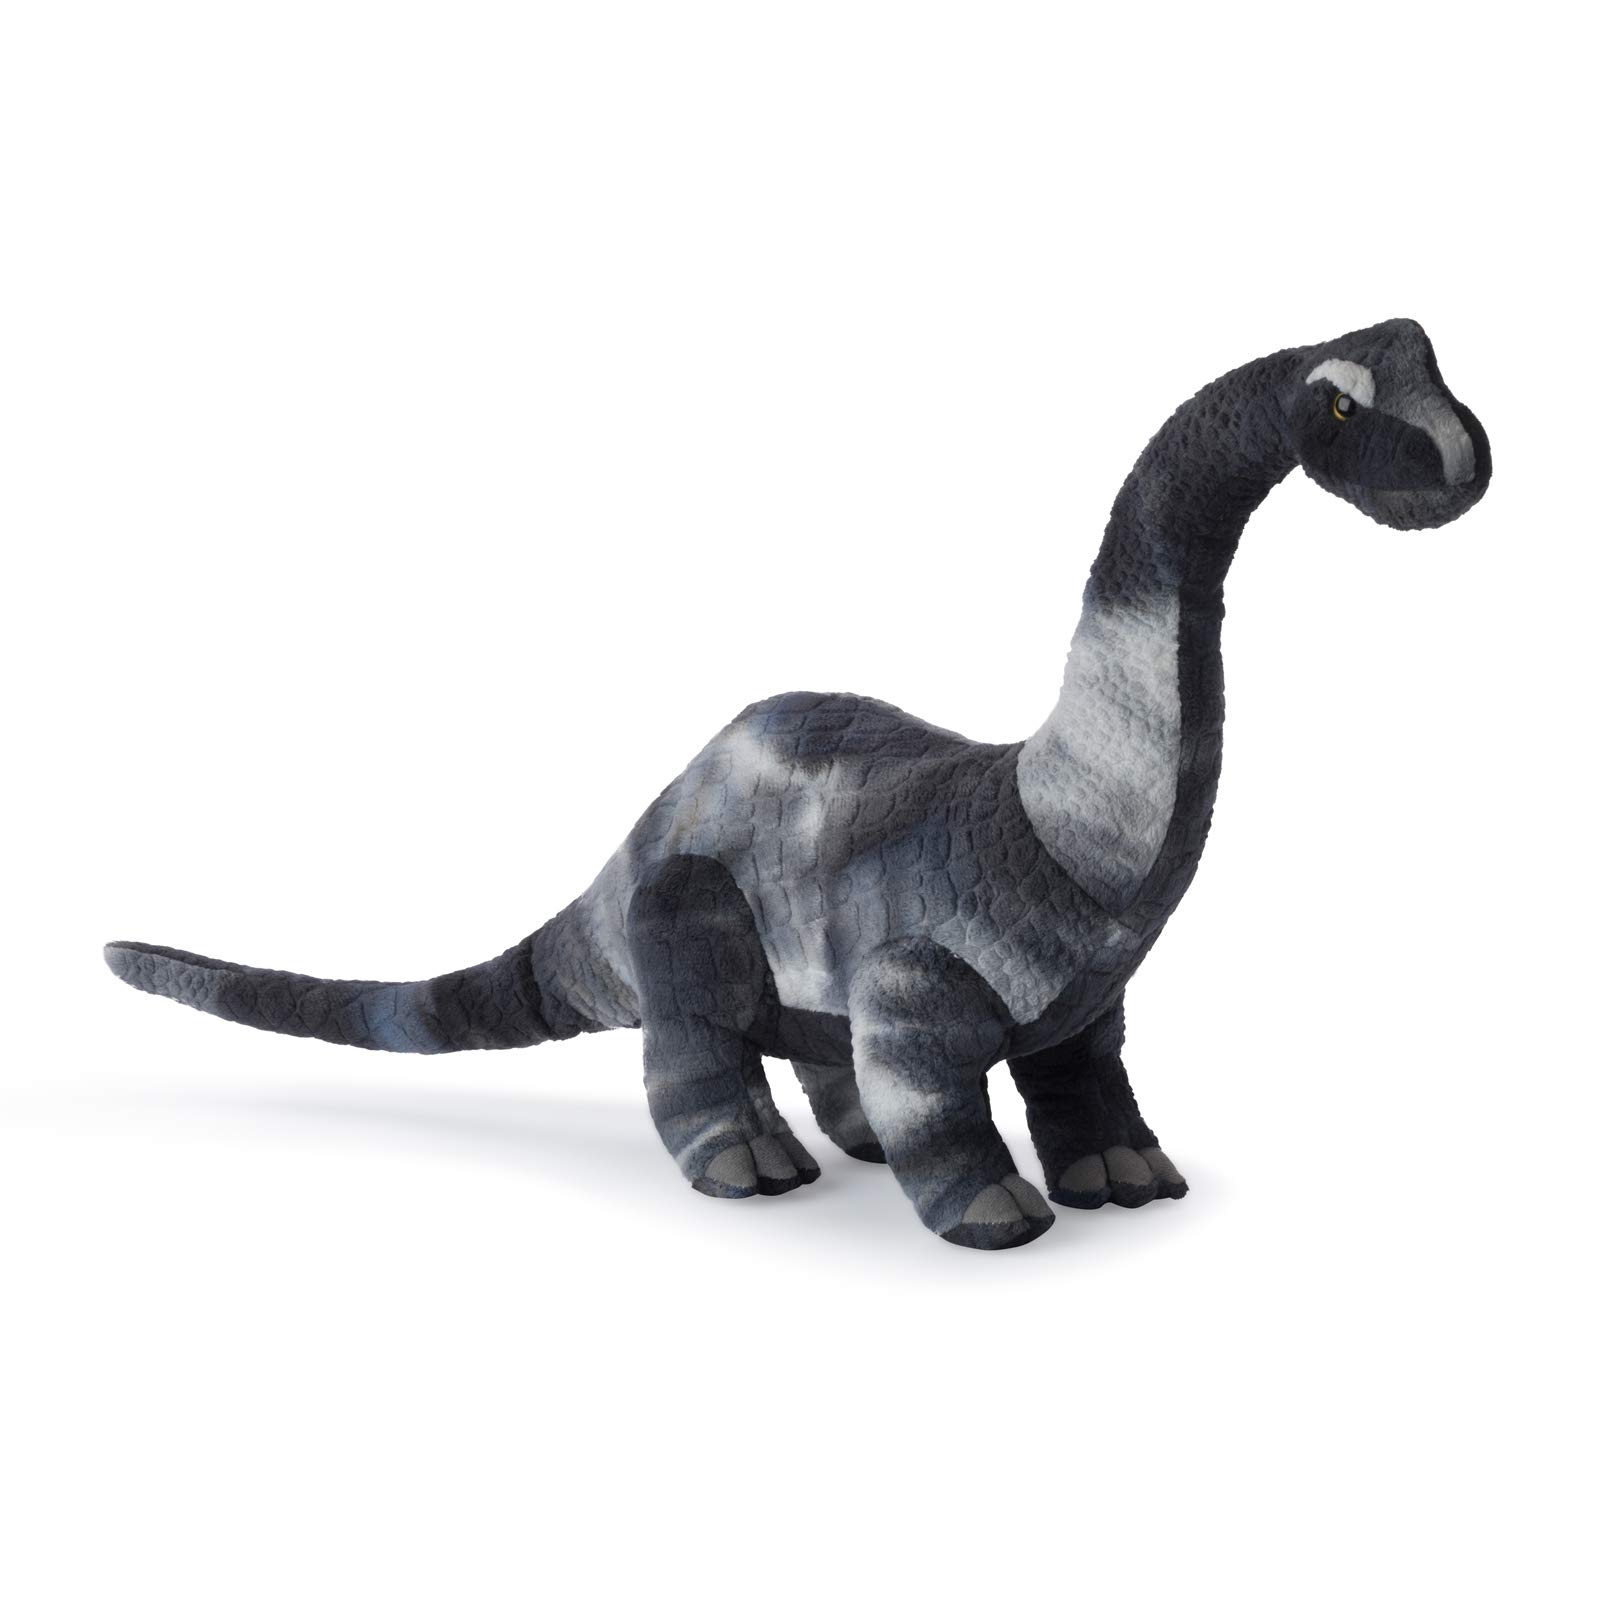 WWF Plüsch 15200011 WWF00738, WWF Brachiosaurus (53cm), realistisch, Super weiches, lebensecht gestaltetes Plüschtier zum Knuddeln und Liebhaben, Handwäsche möglich